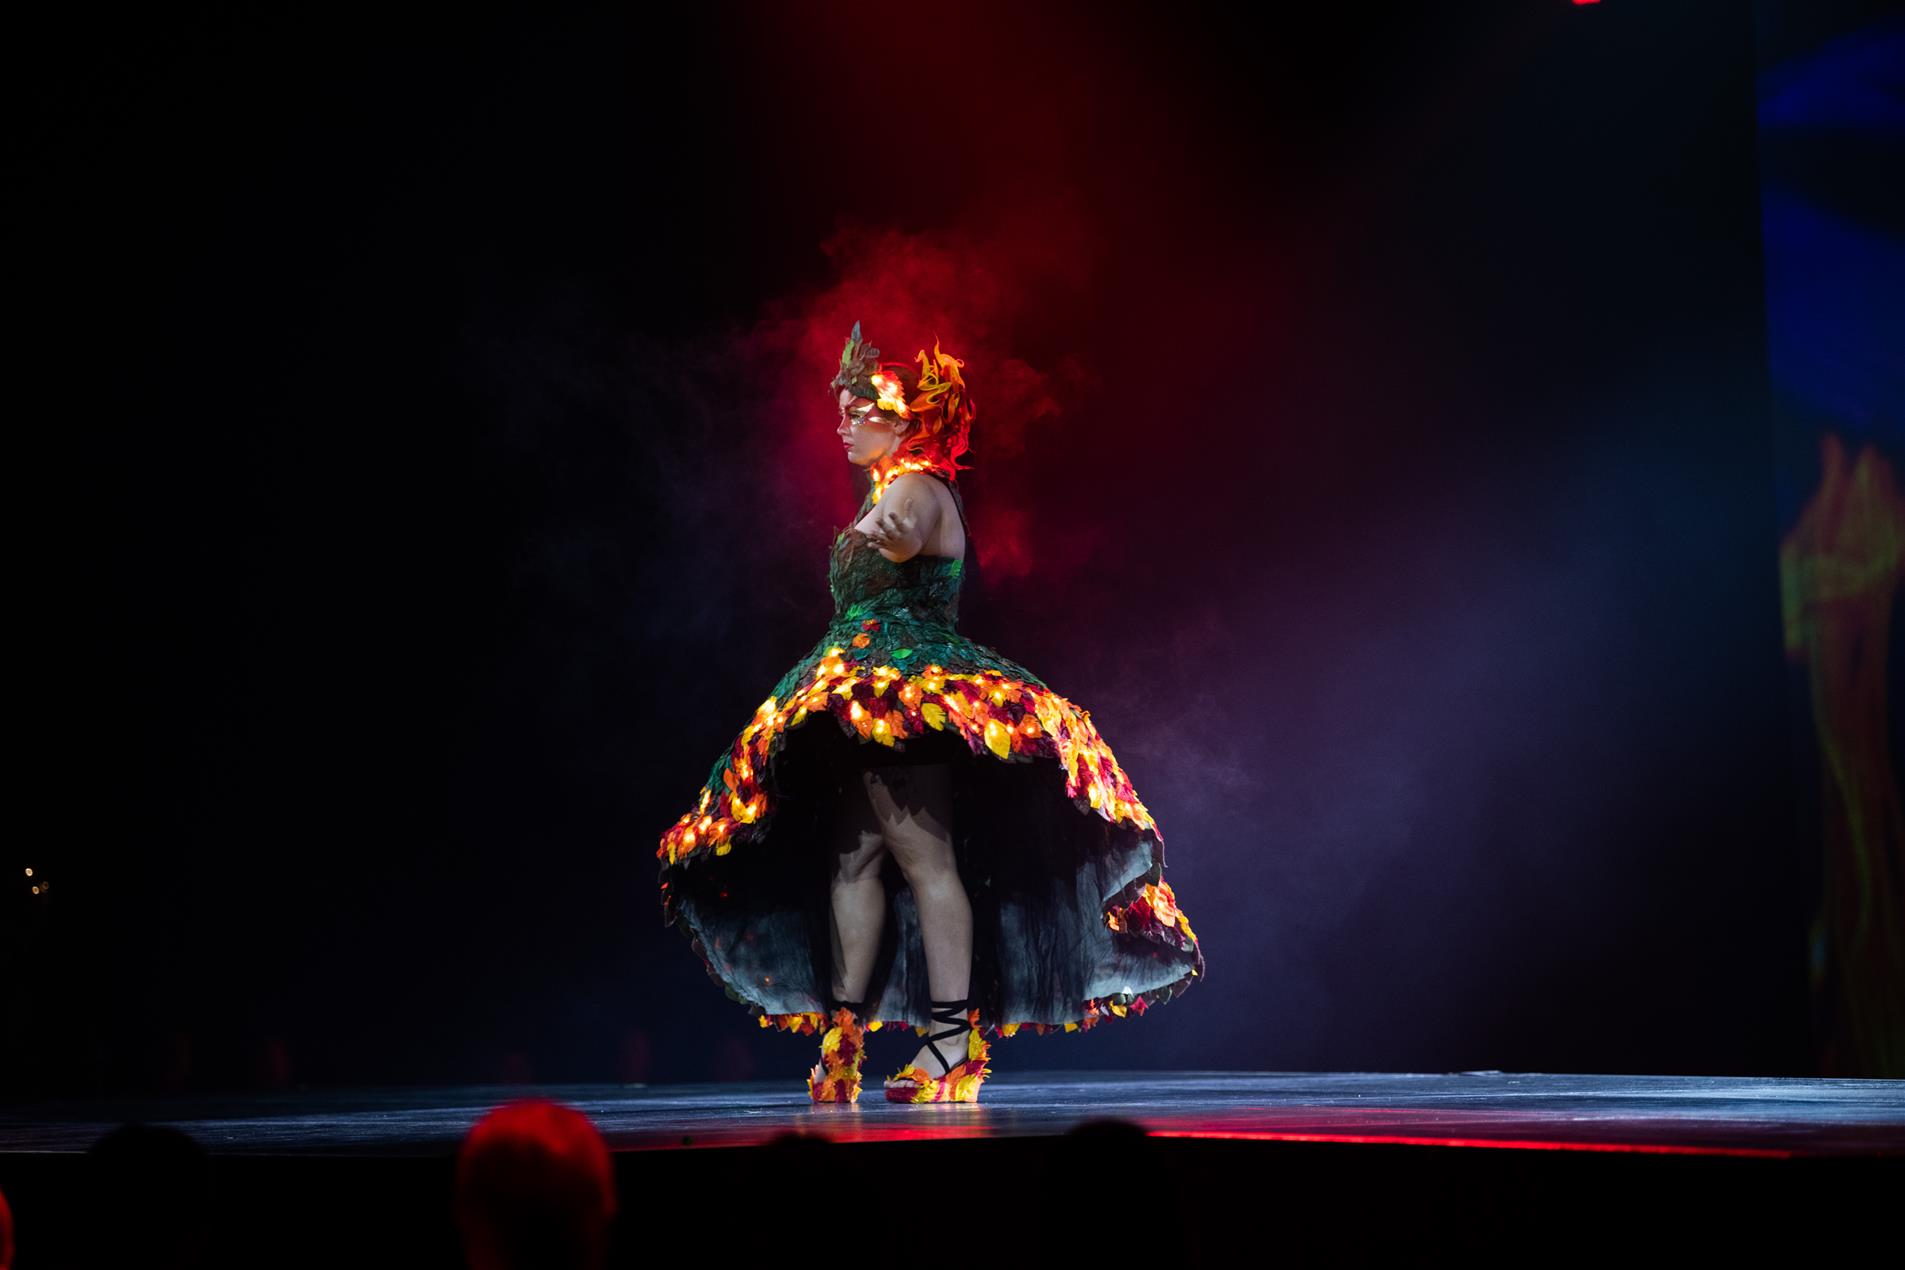 A female model wearing a fiery dress on stage.